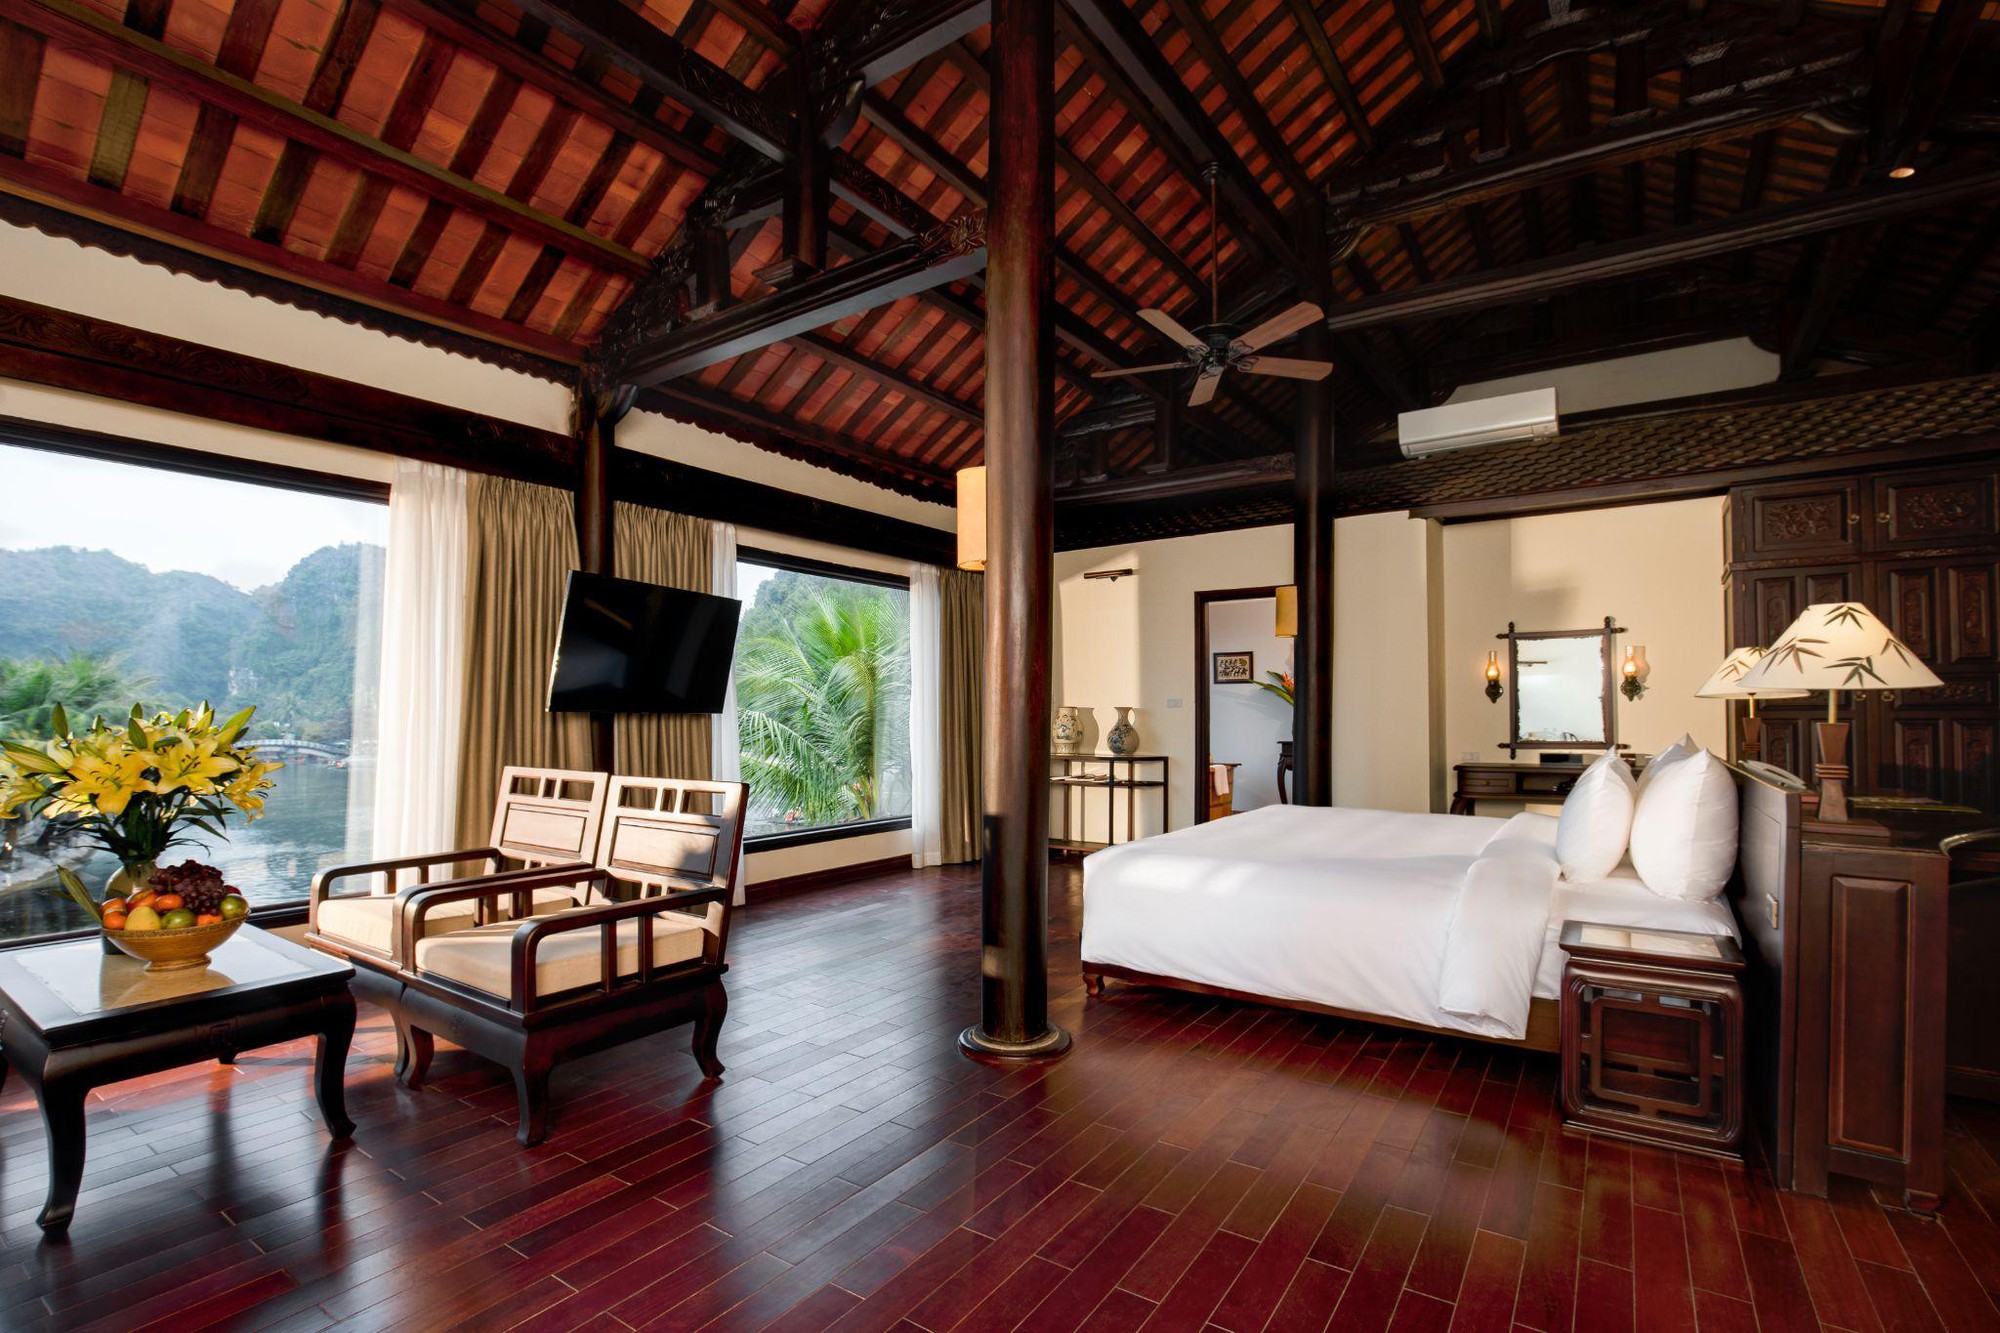 Tận hưởng không gian nghỉ dưỡng đậm dấu ấn biệt phủ Bắc Bộ cùng Emeralda Resort Tam Cốc - Ảnh 2.